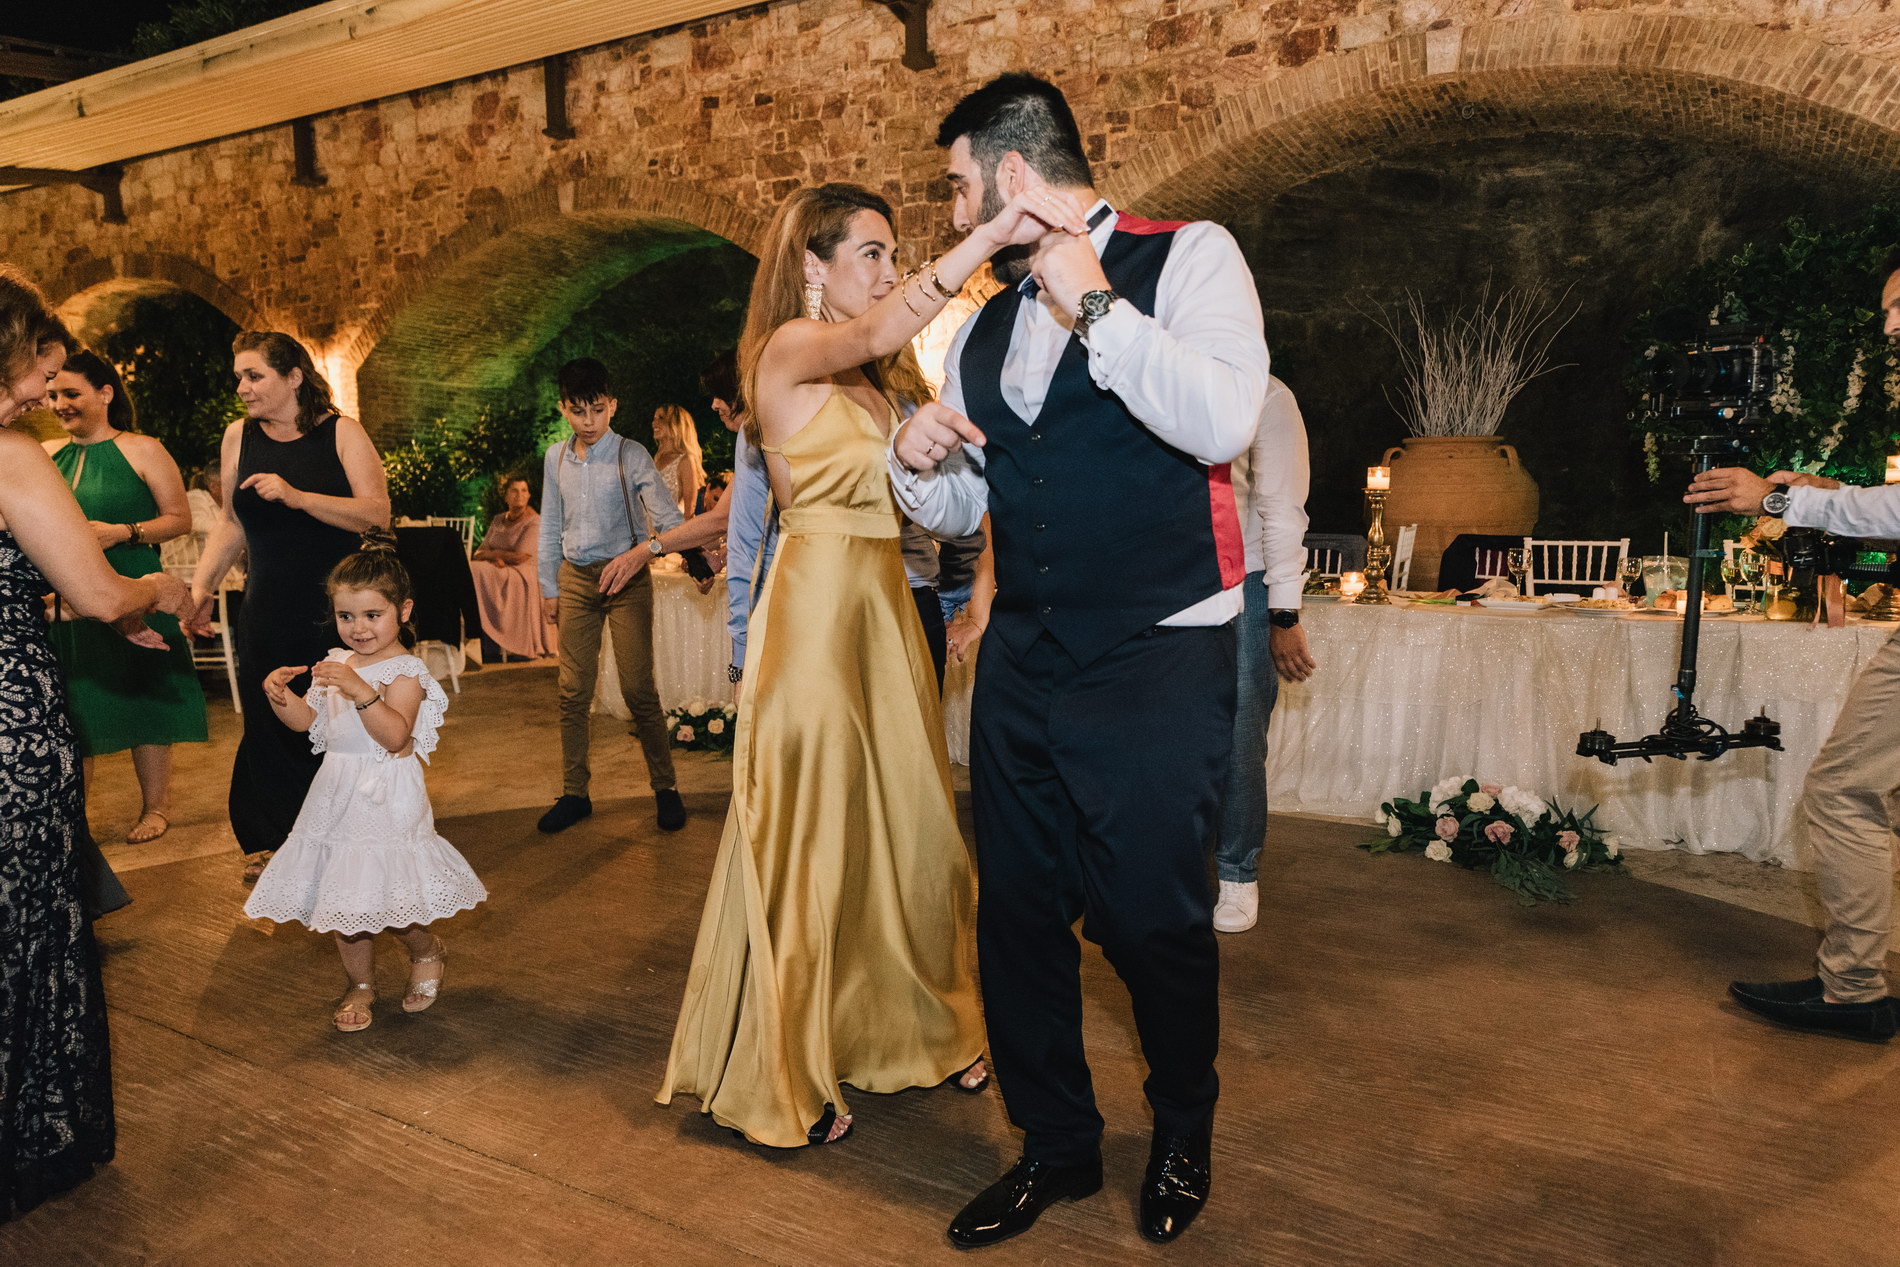 Γαμήλιο πάρτυ στην δεξίωση του κτήματος απέραντο γαλάζιο Χρυσοβιτσιώτη